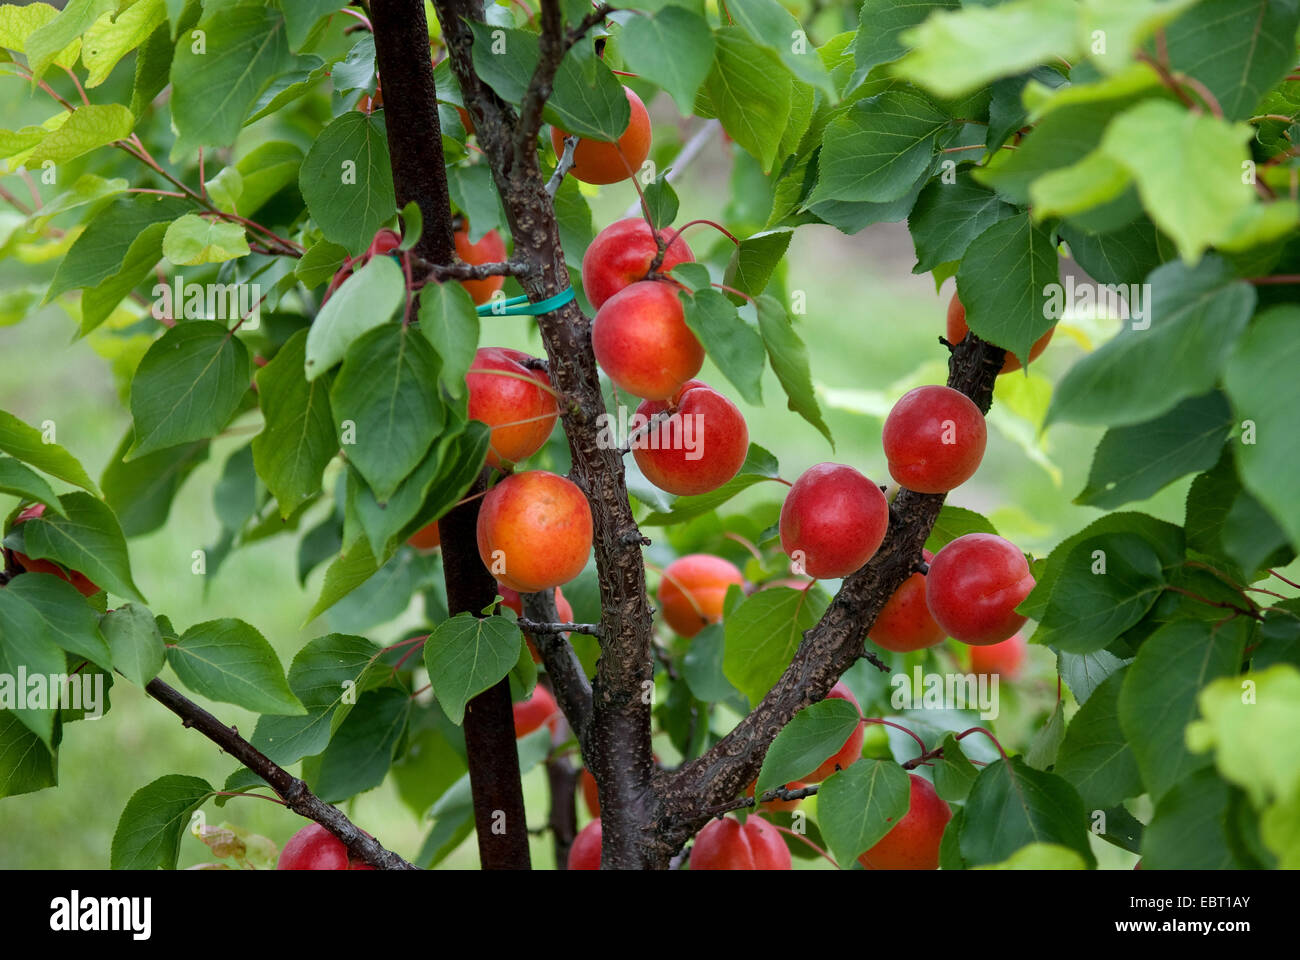 apricot tree (Prunus armeniaca 'Big Red', Prunus armeniaca Big Red), cultivar Big Red, apricots on a tree Stock Photo